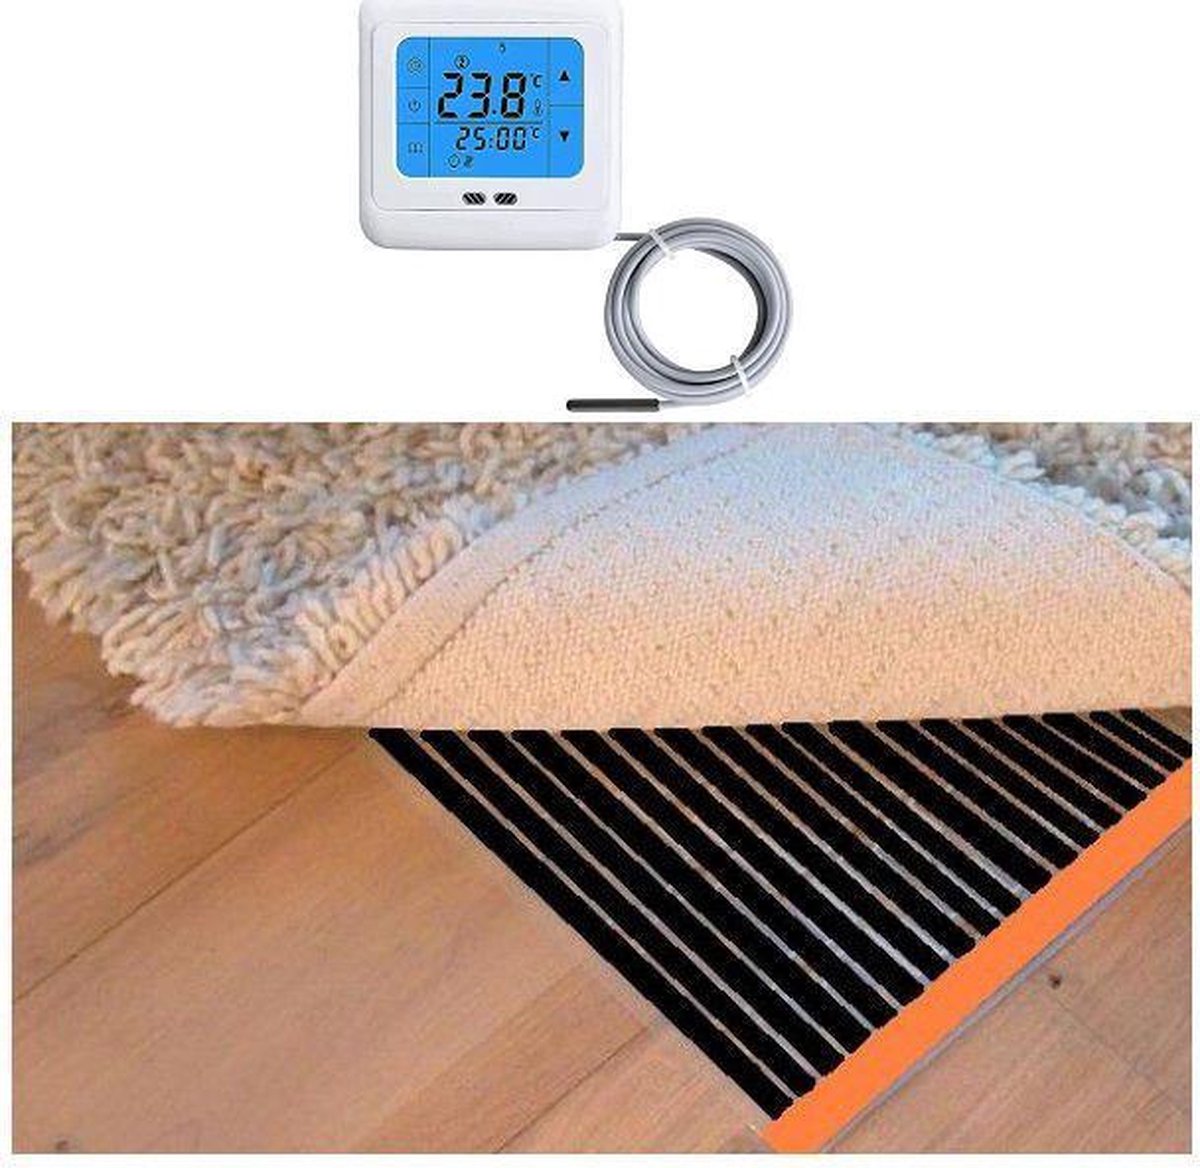 Woonkamer verwarmingsfolie infrarood folie voor vloerbedekking, tapijten vloerkleden elektrisch met TH 89 thermostaat 200 cm x 500 cm (100W/m2)